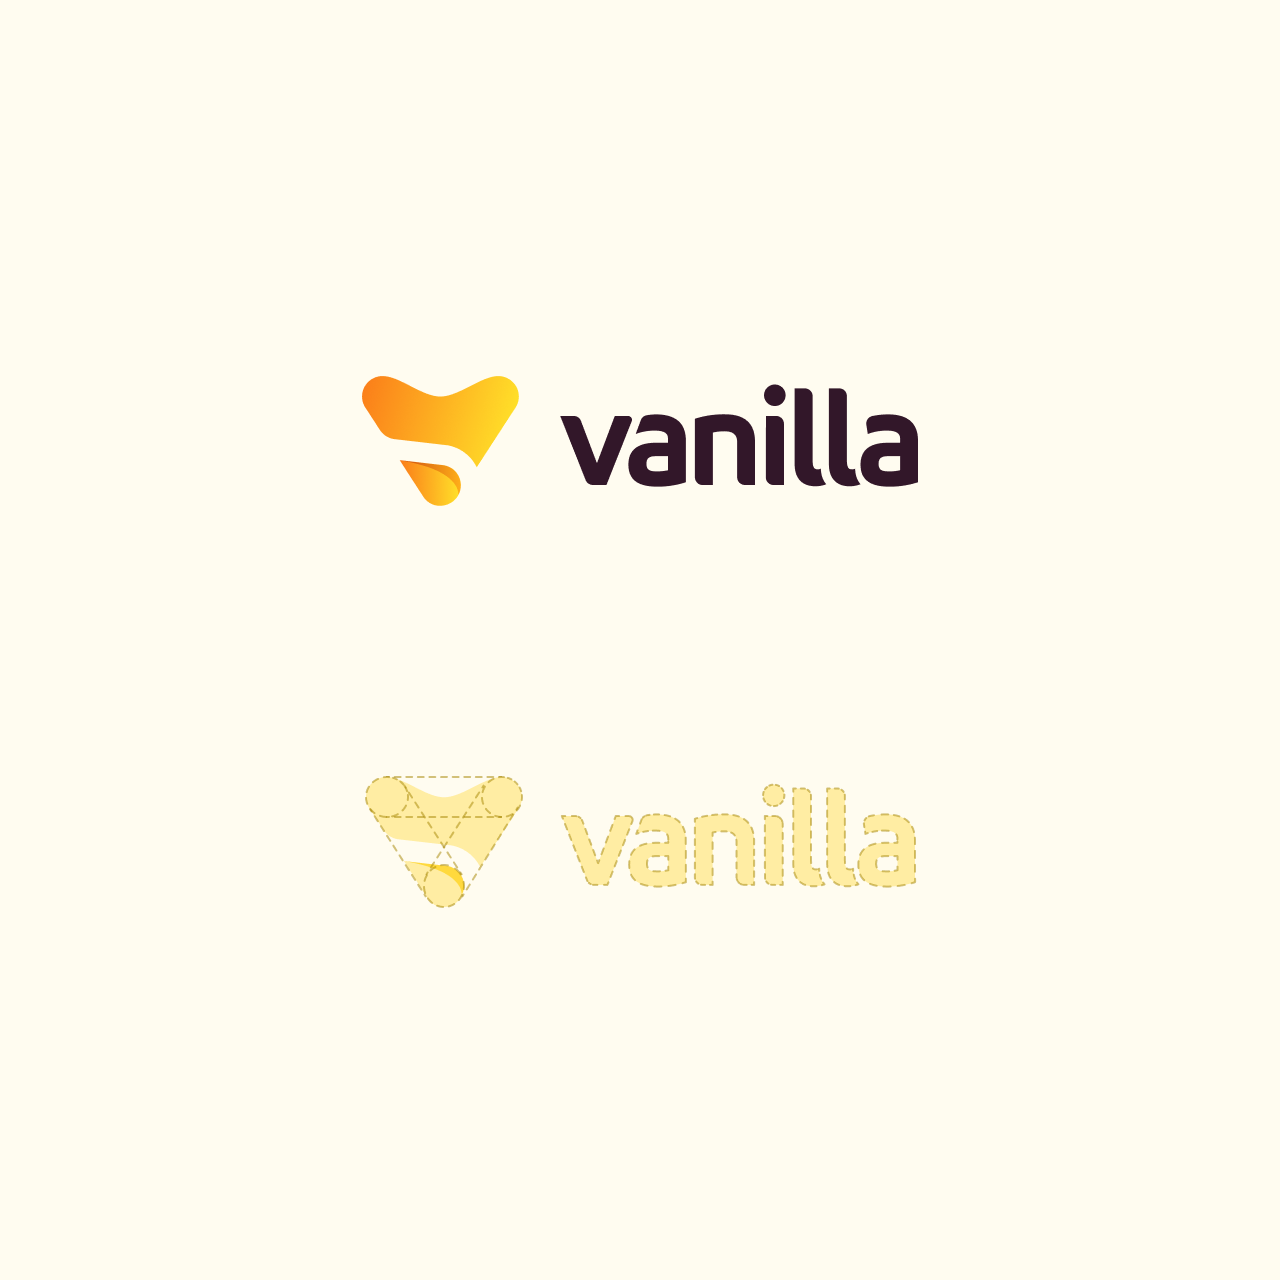 Vanilla logo construction